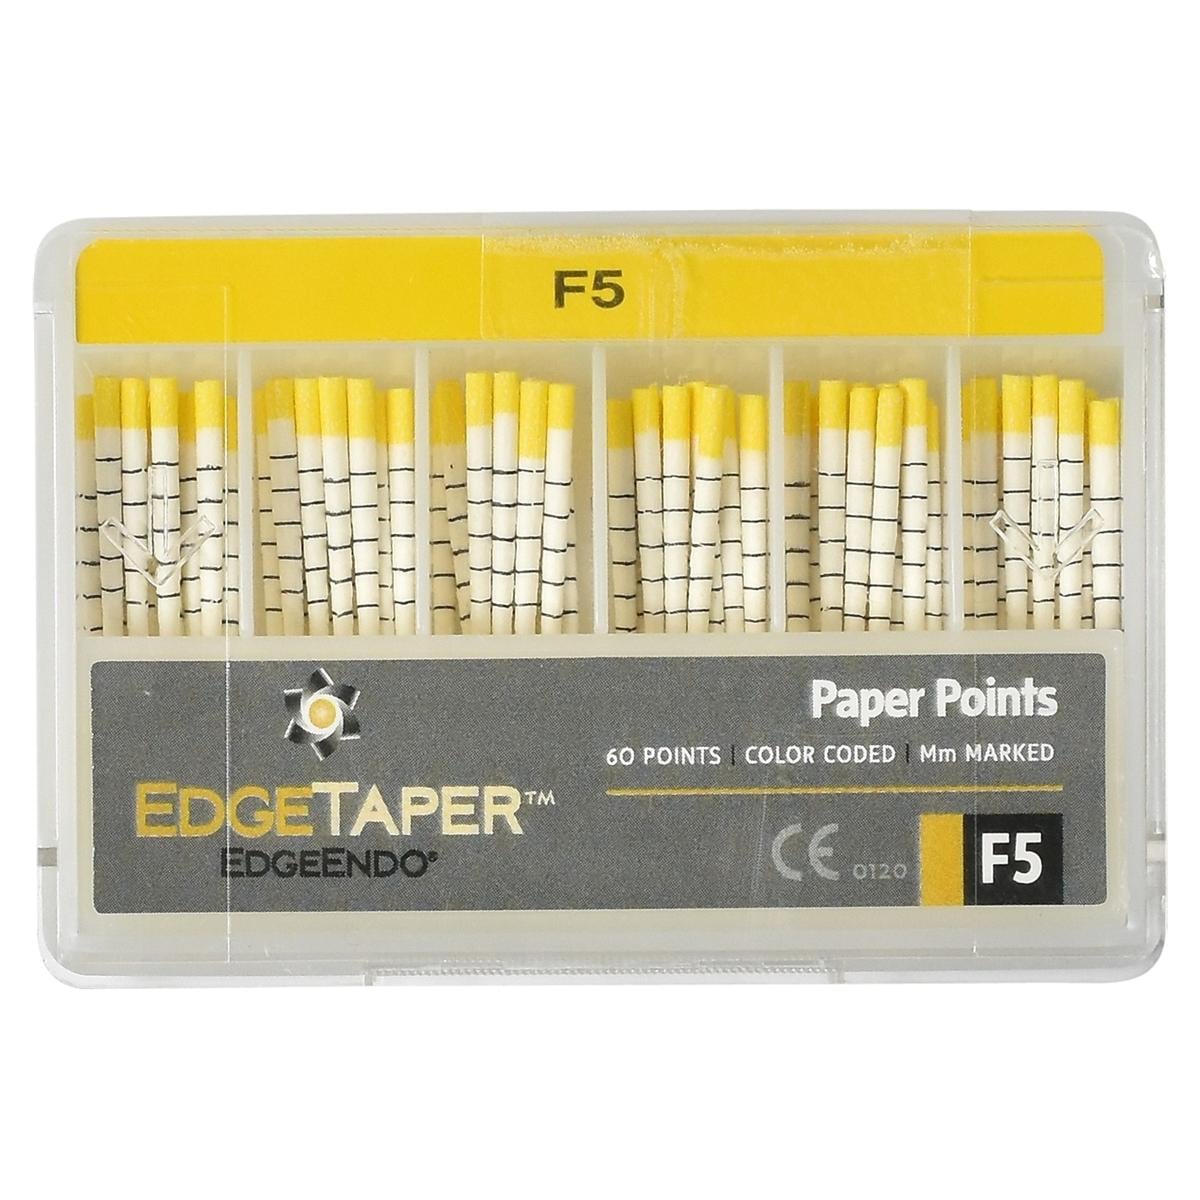 EdgeTaper? Paper Point - F5 (50)